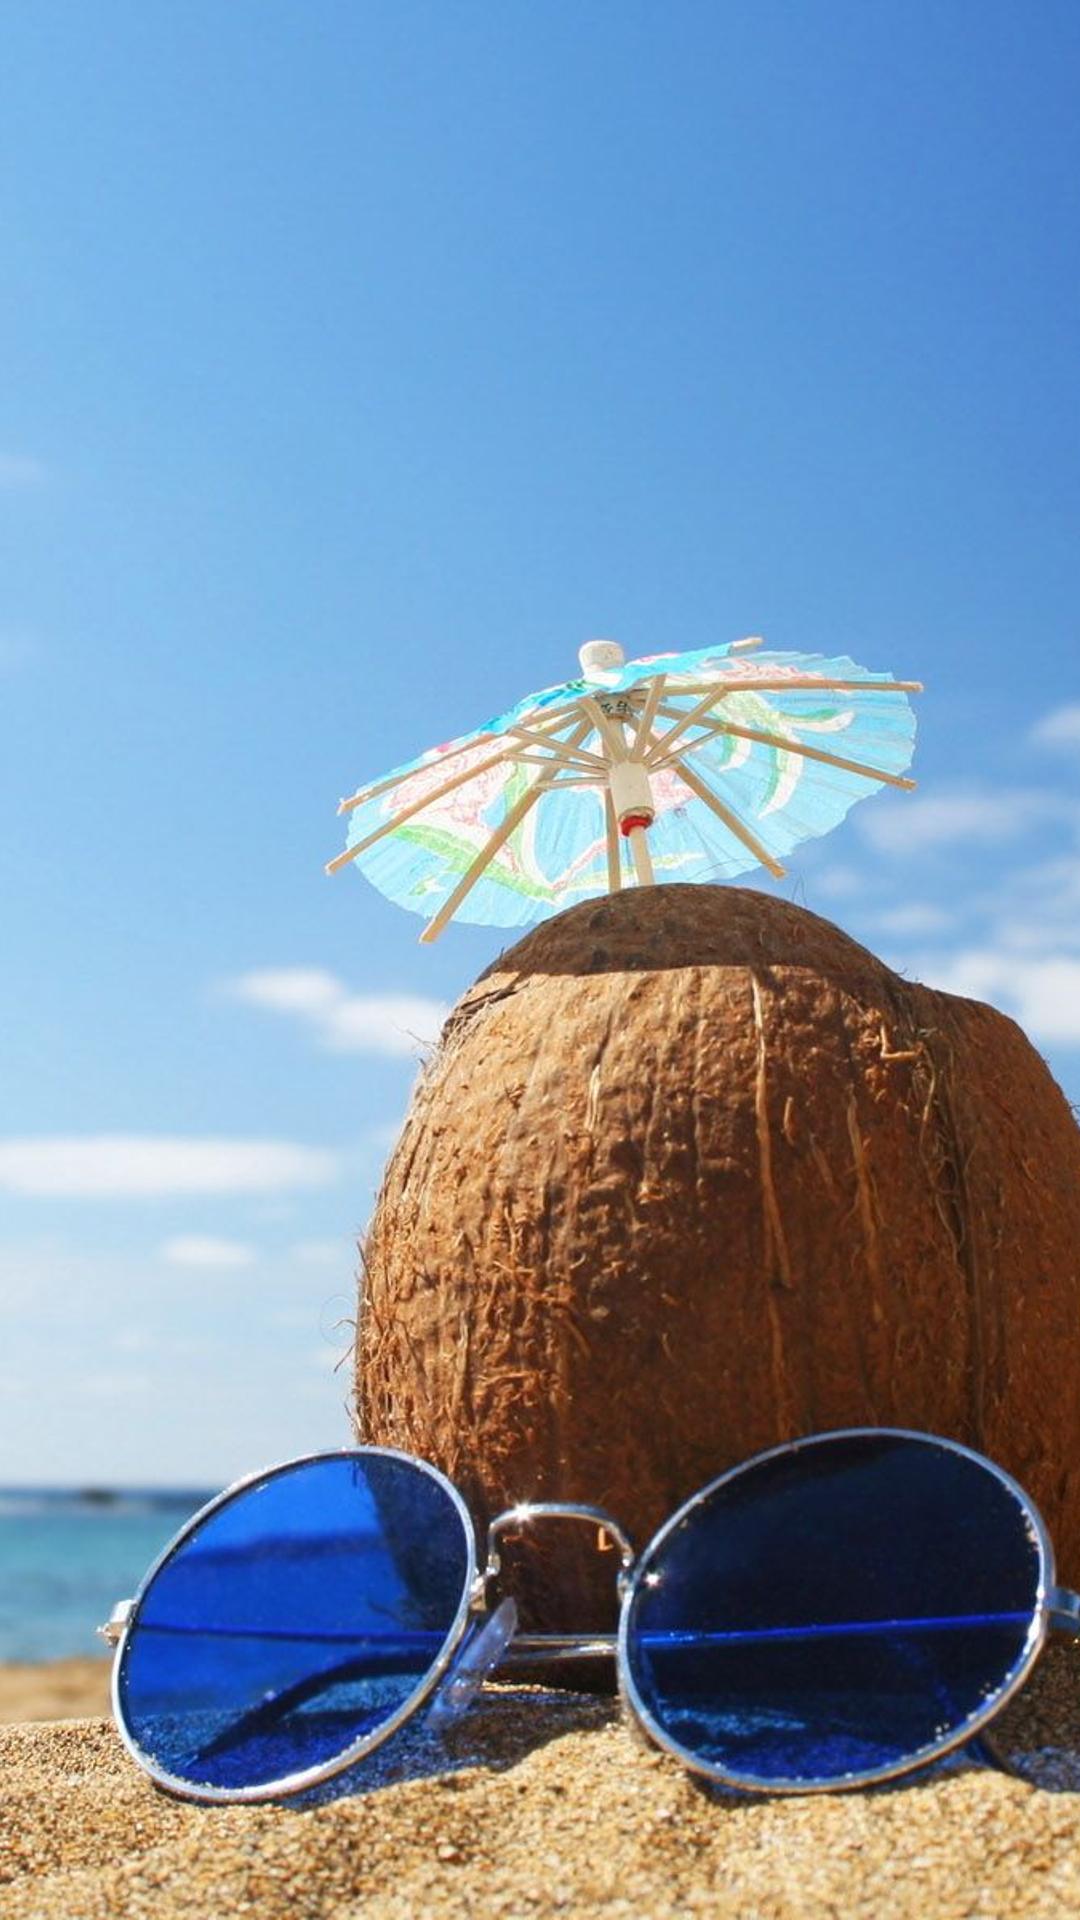 Включи лето хорошо. Лето пляж. Отпуск. Лето солнце пляж. Кокос на пляже.